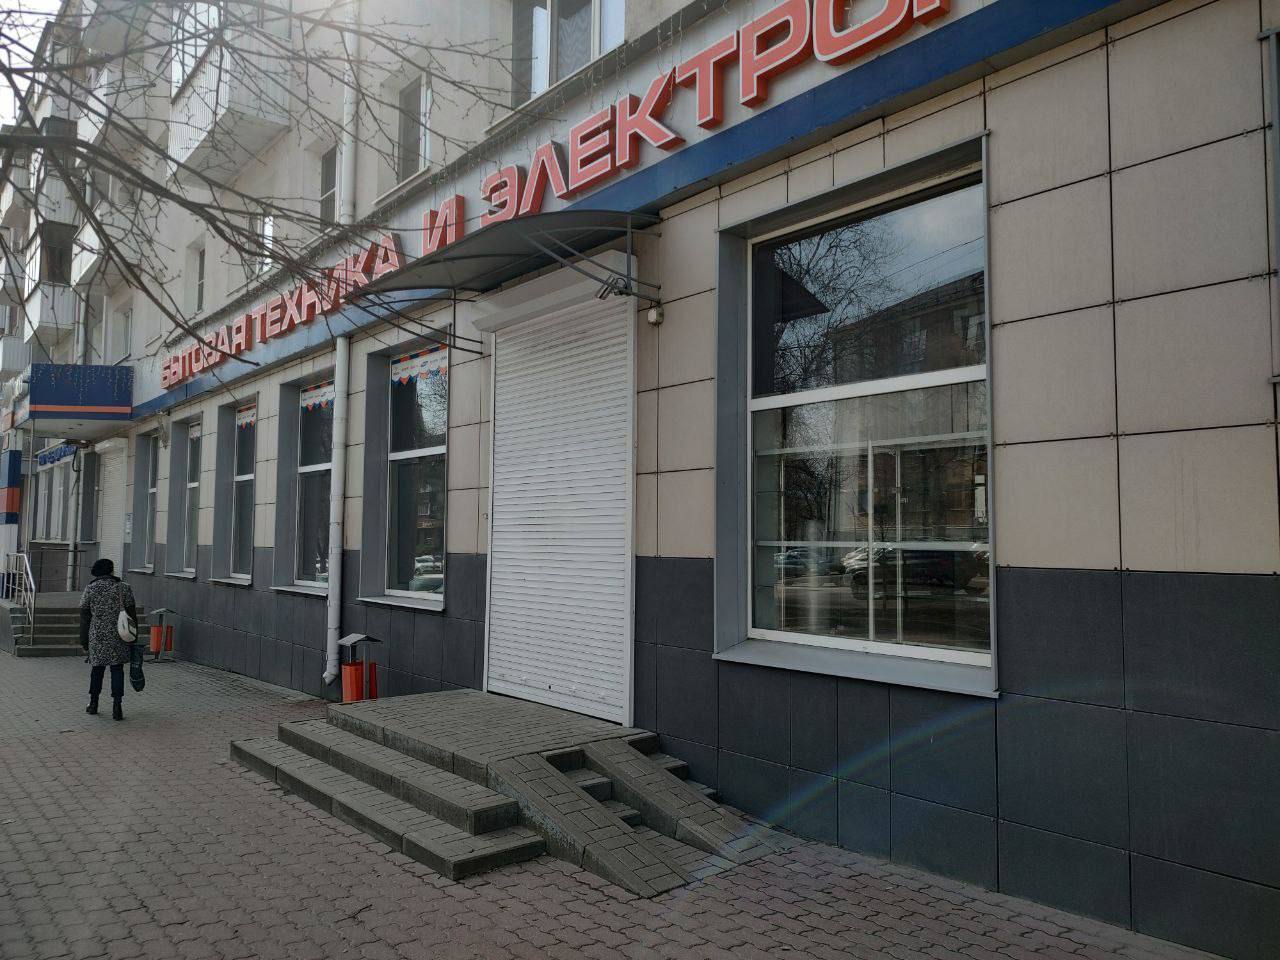 Ещё один крупный магазин закрывается в Белгороде